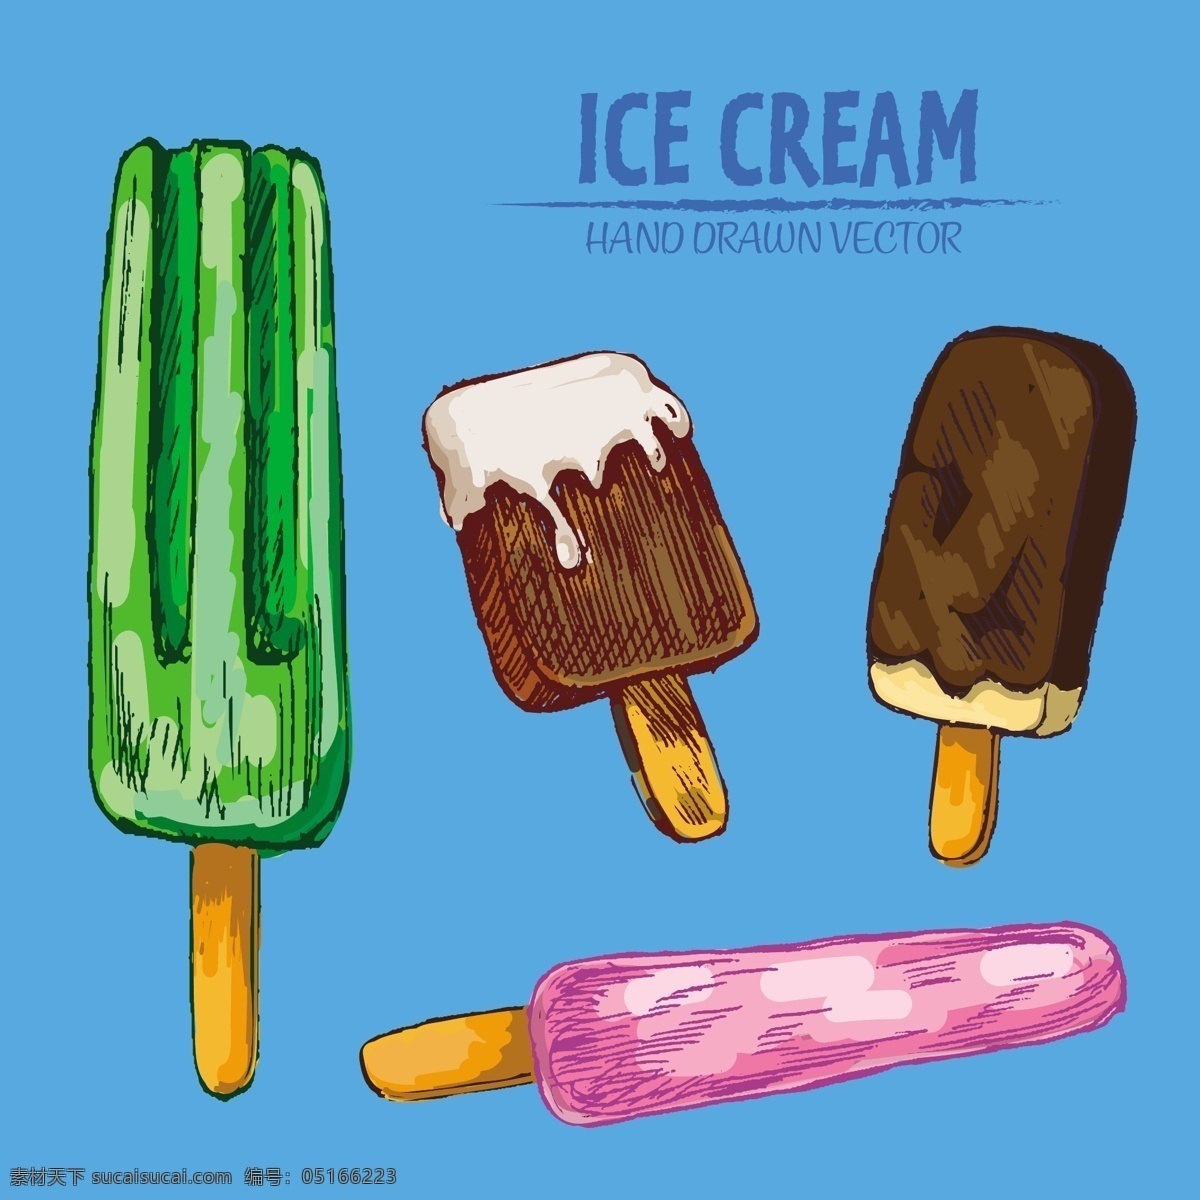 手绘冰淇淋 冰淇淋 冷饮 甜点 餐饮 手绘 卡通 彩色 矢量 食品蔬菜水果 生活百科 餐饮美食